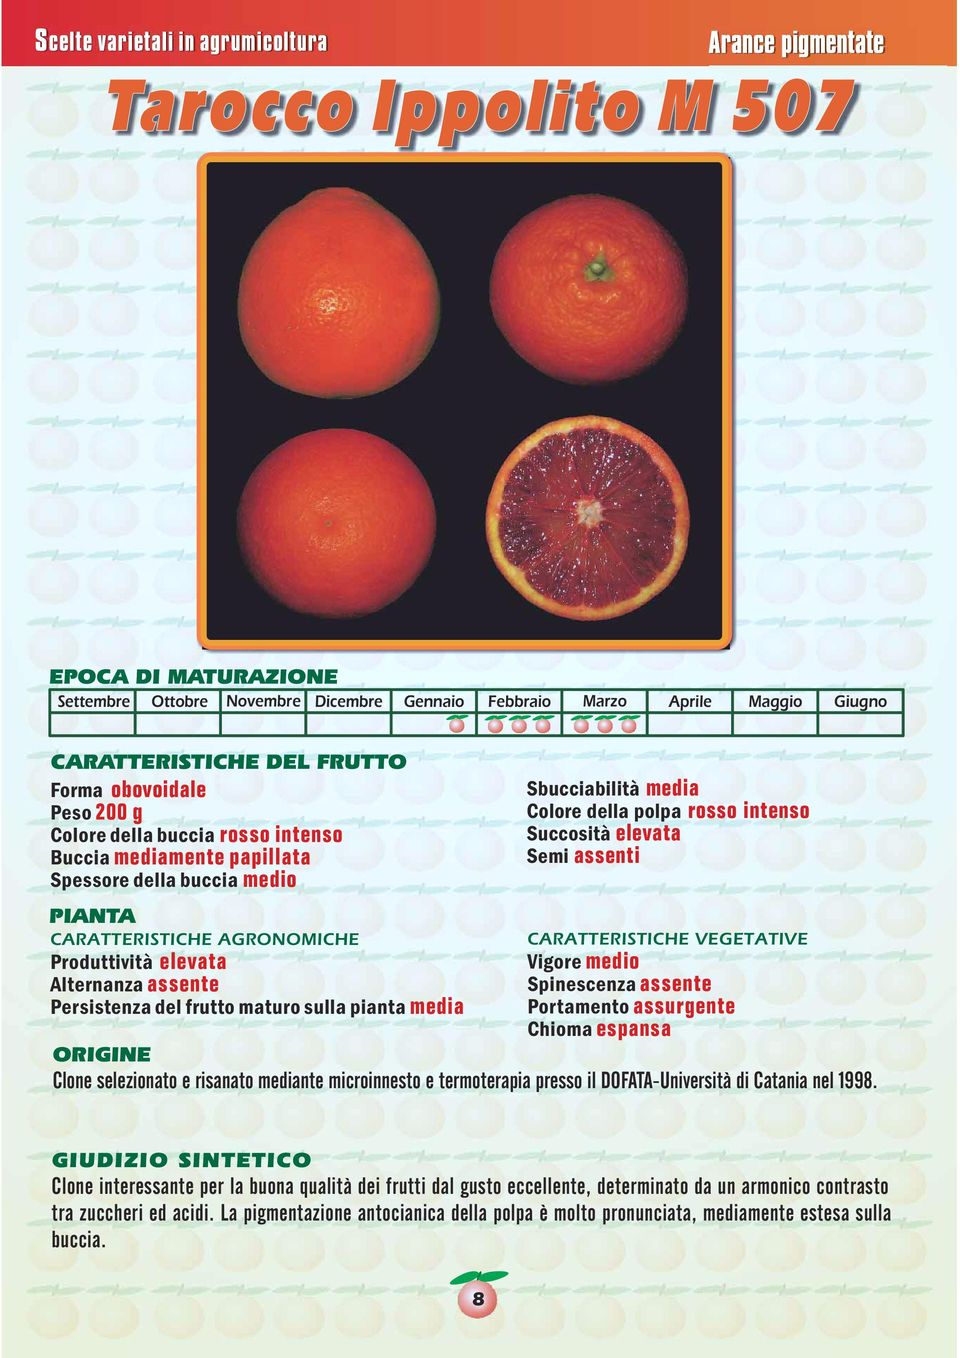 Chioma espansa Clone selezionato e risanato mediante microinnesto e termoterapia presso il DOFATA-Università di Catania nel 1998.